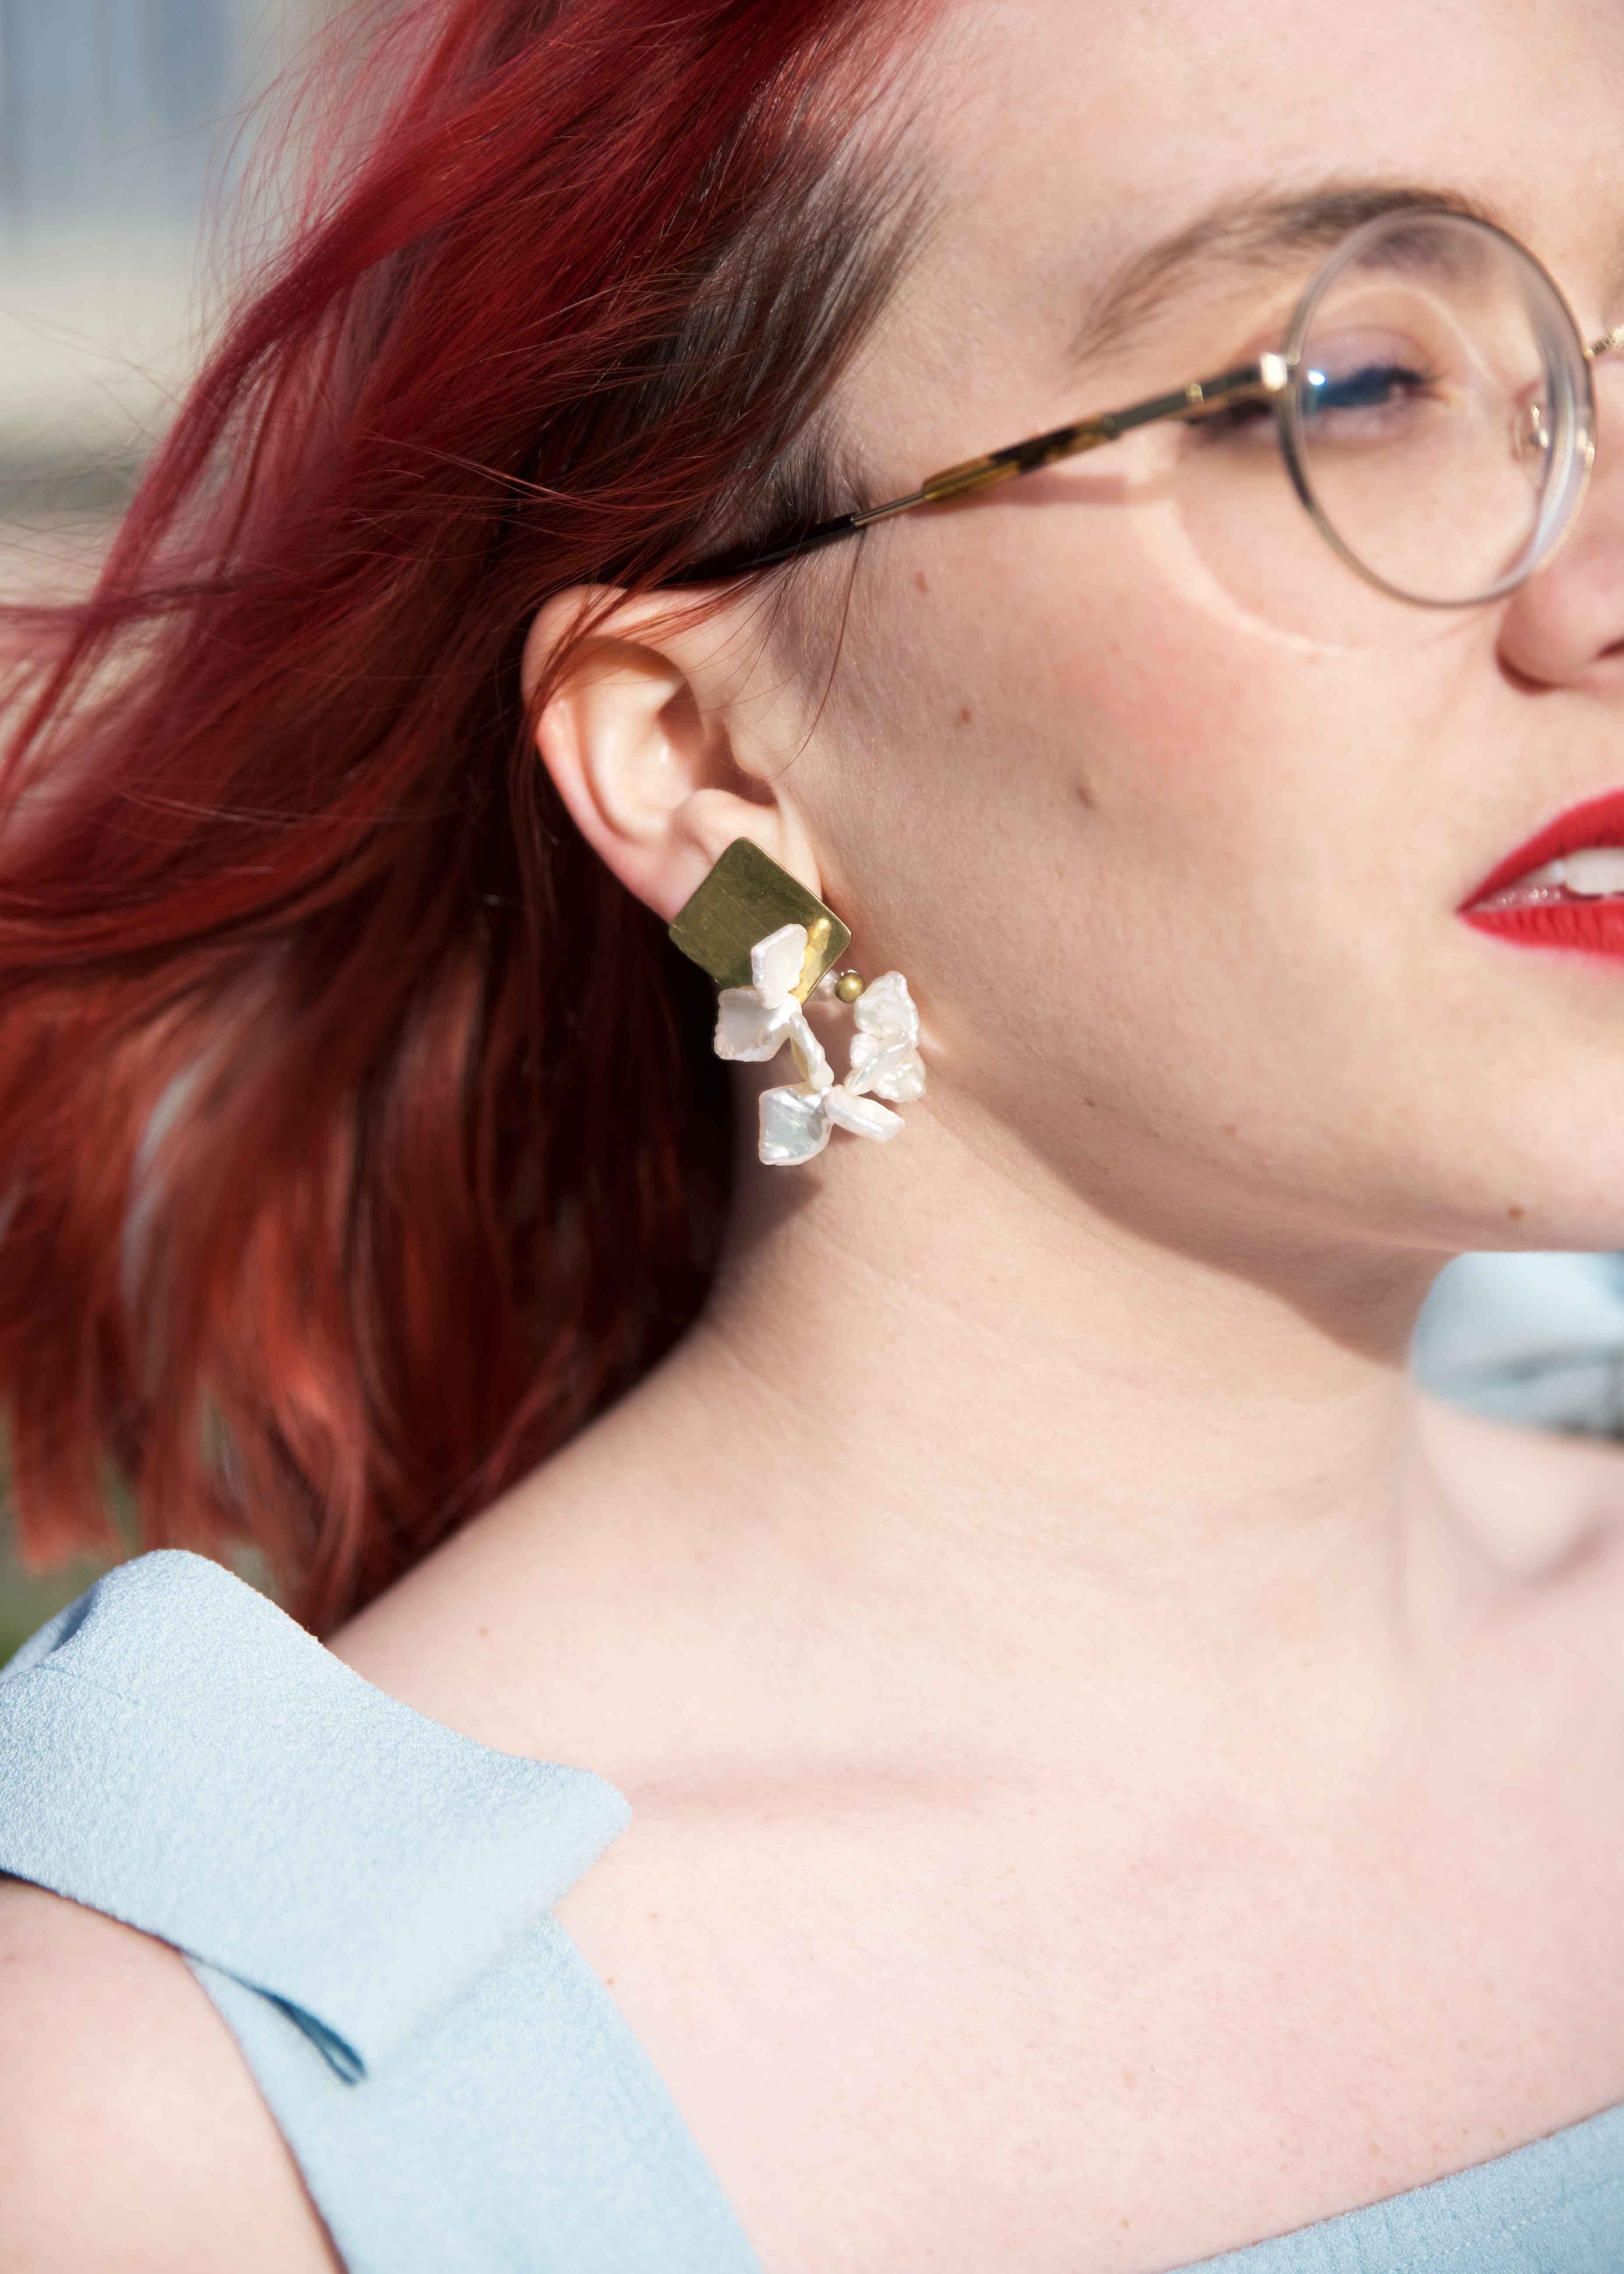 michelle-ross-earrings